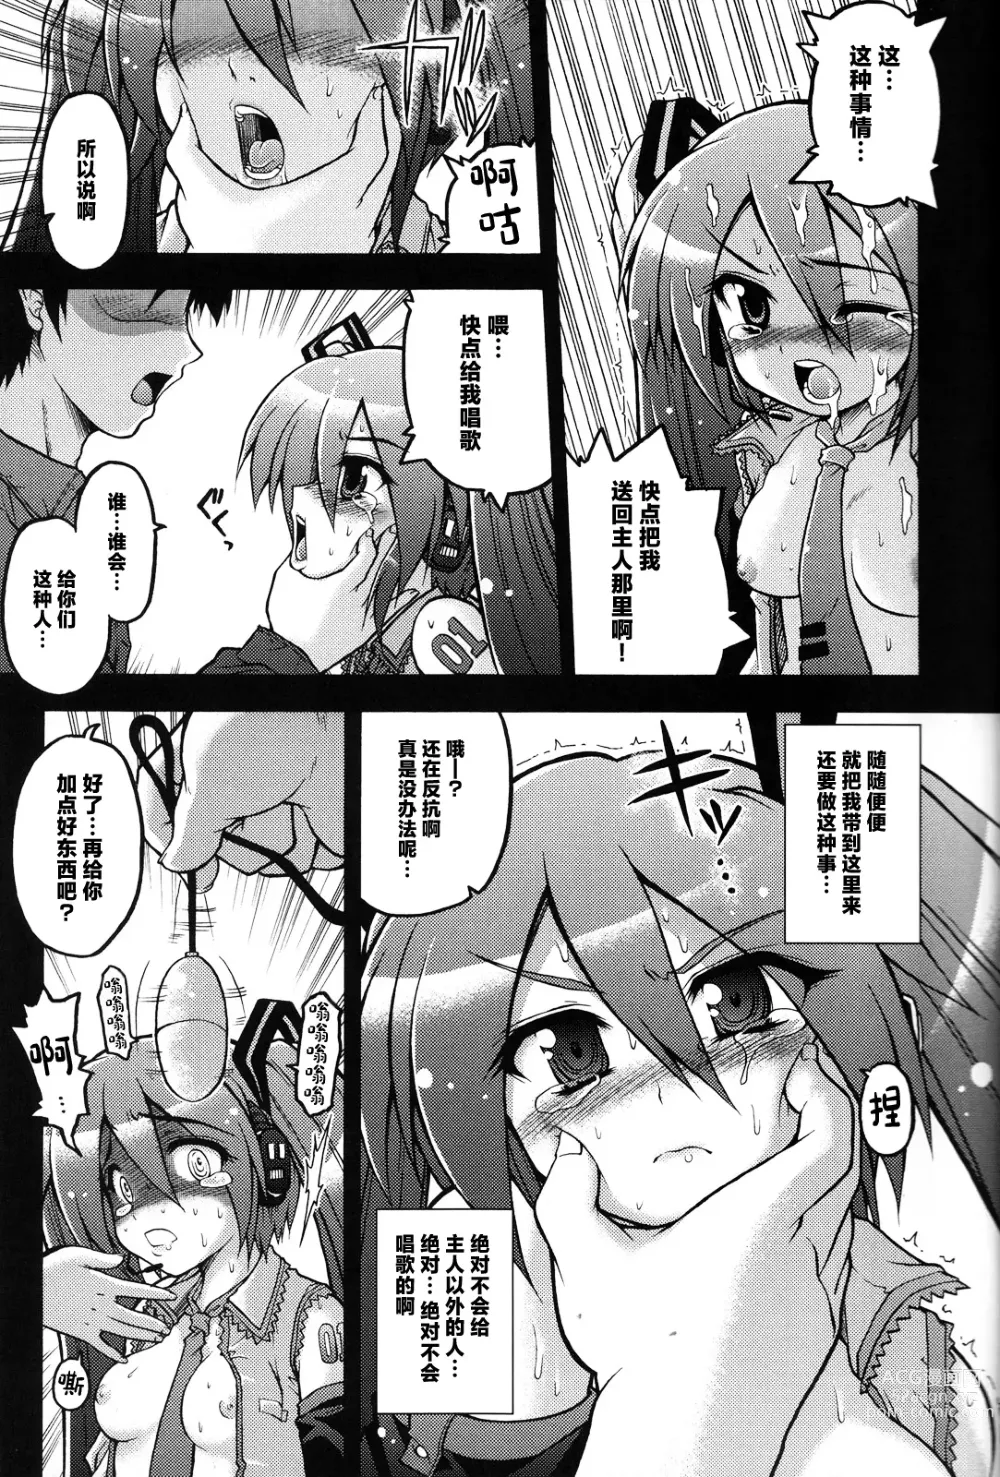 Page 4 of doujinshi Hatsune Miku ni Hidoi Koto Suru Hon